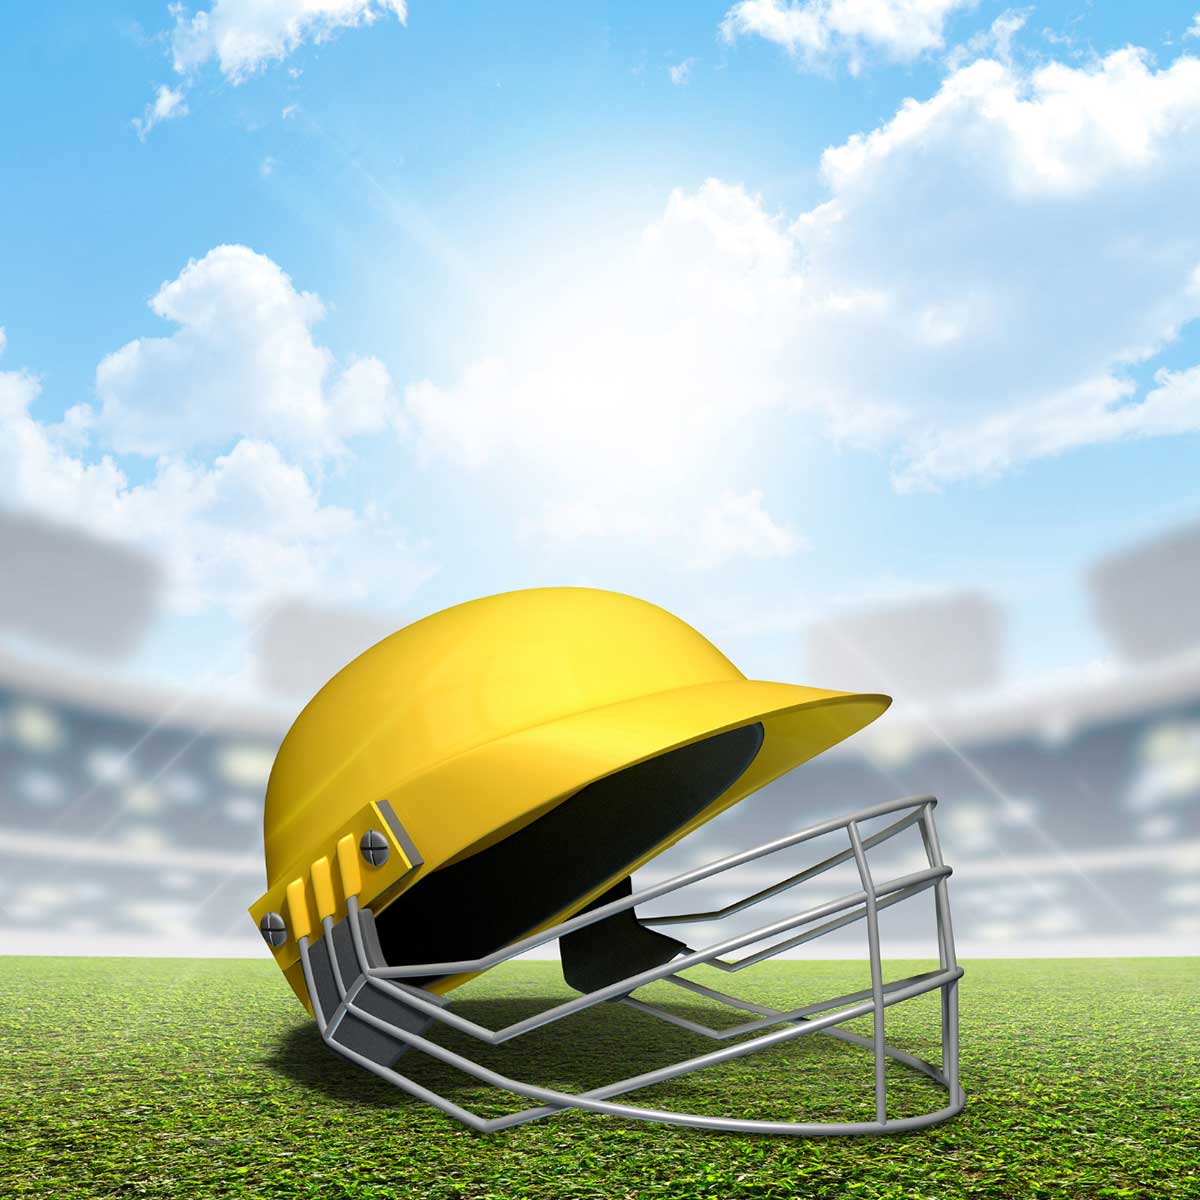 Cricket Helmet Manufacturers in Indonesia